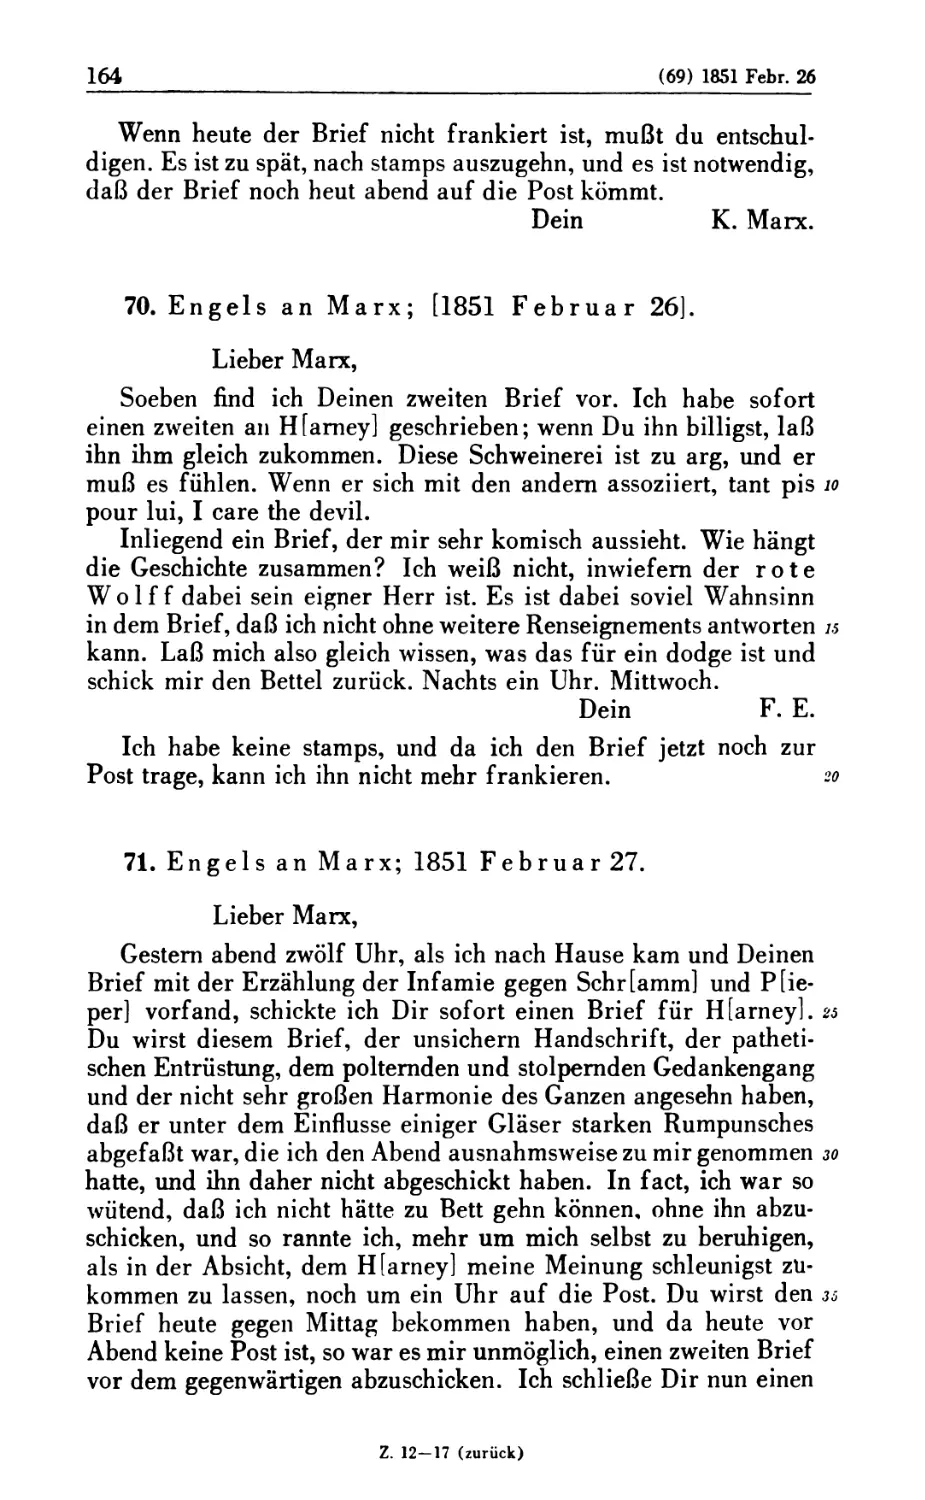 70. Engels an Marx; [1851 Februar 26]
71. Engels an Marx; 1851 Februar 27